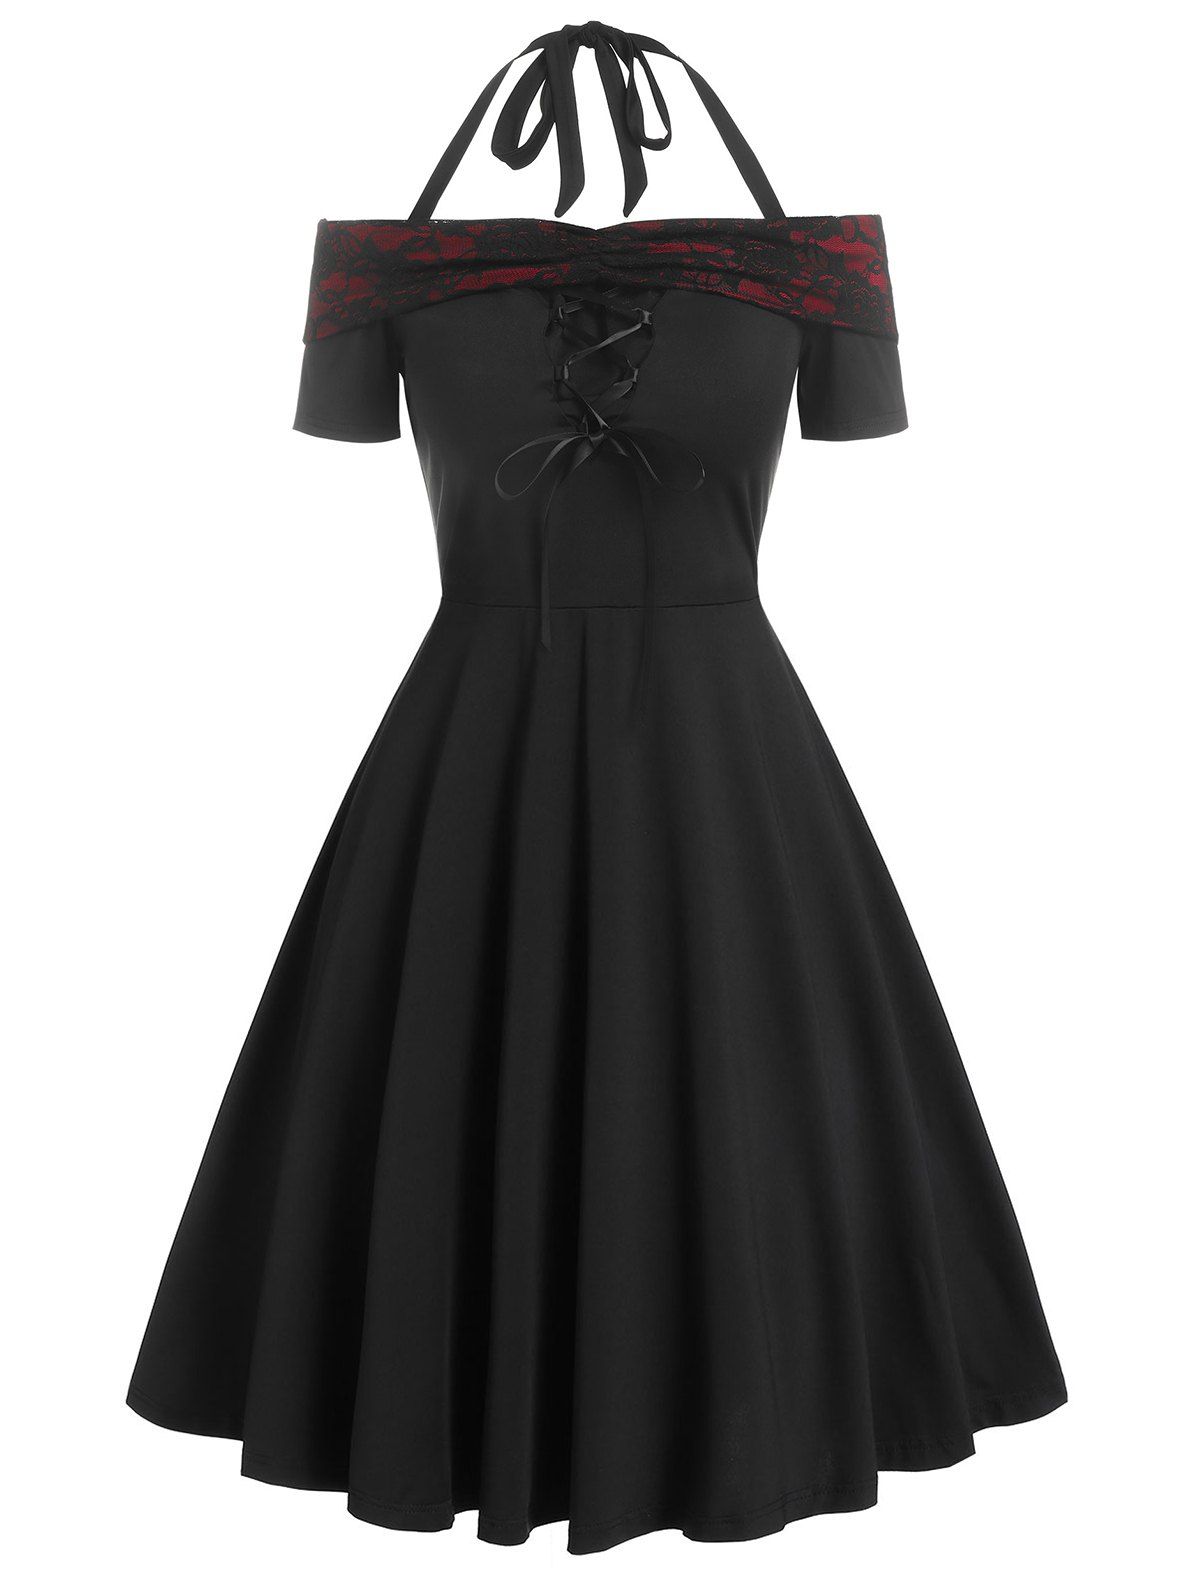 Gothic Off The Shoulder Lace Up Halter Short Sleeve Dress - BLACK L